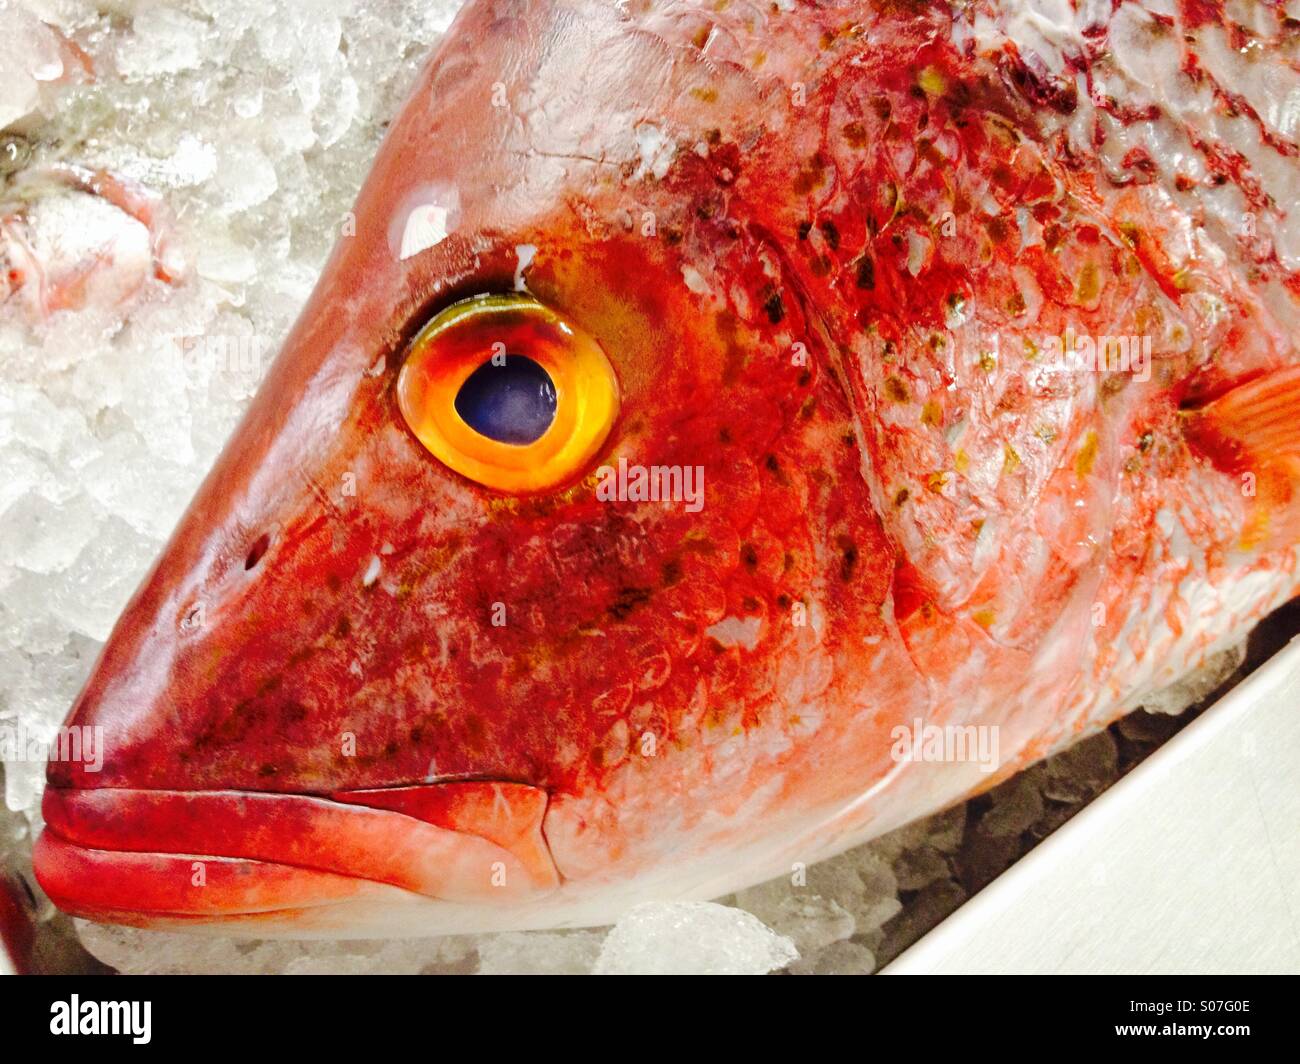 Occhio Di Pesce Morto Immagini e Fotos Stock - Alamy